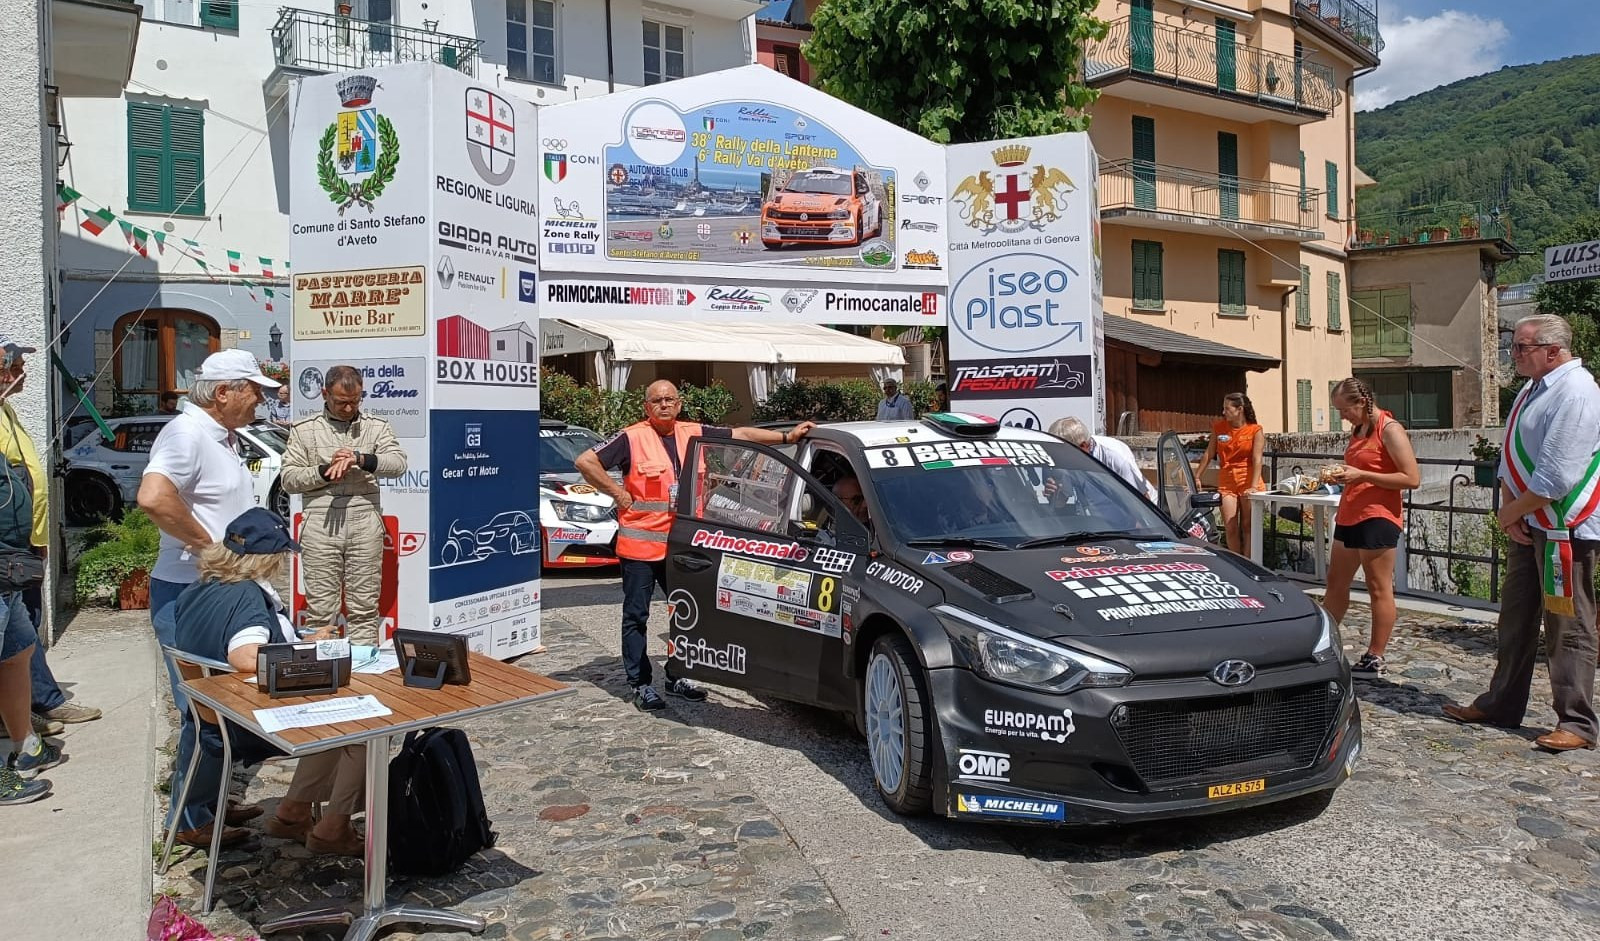 Rally della Lanterna, PS Monte Penna 1 Hyundai R5 Primocanale40 di Rossi-Zanini